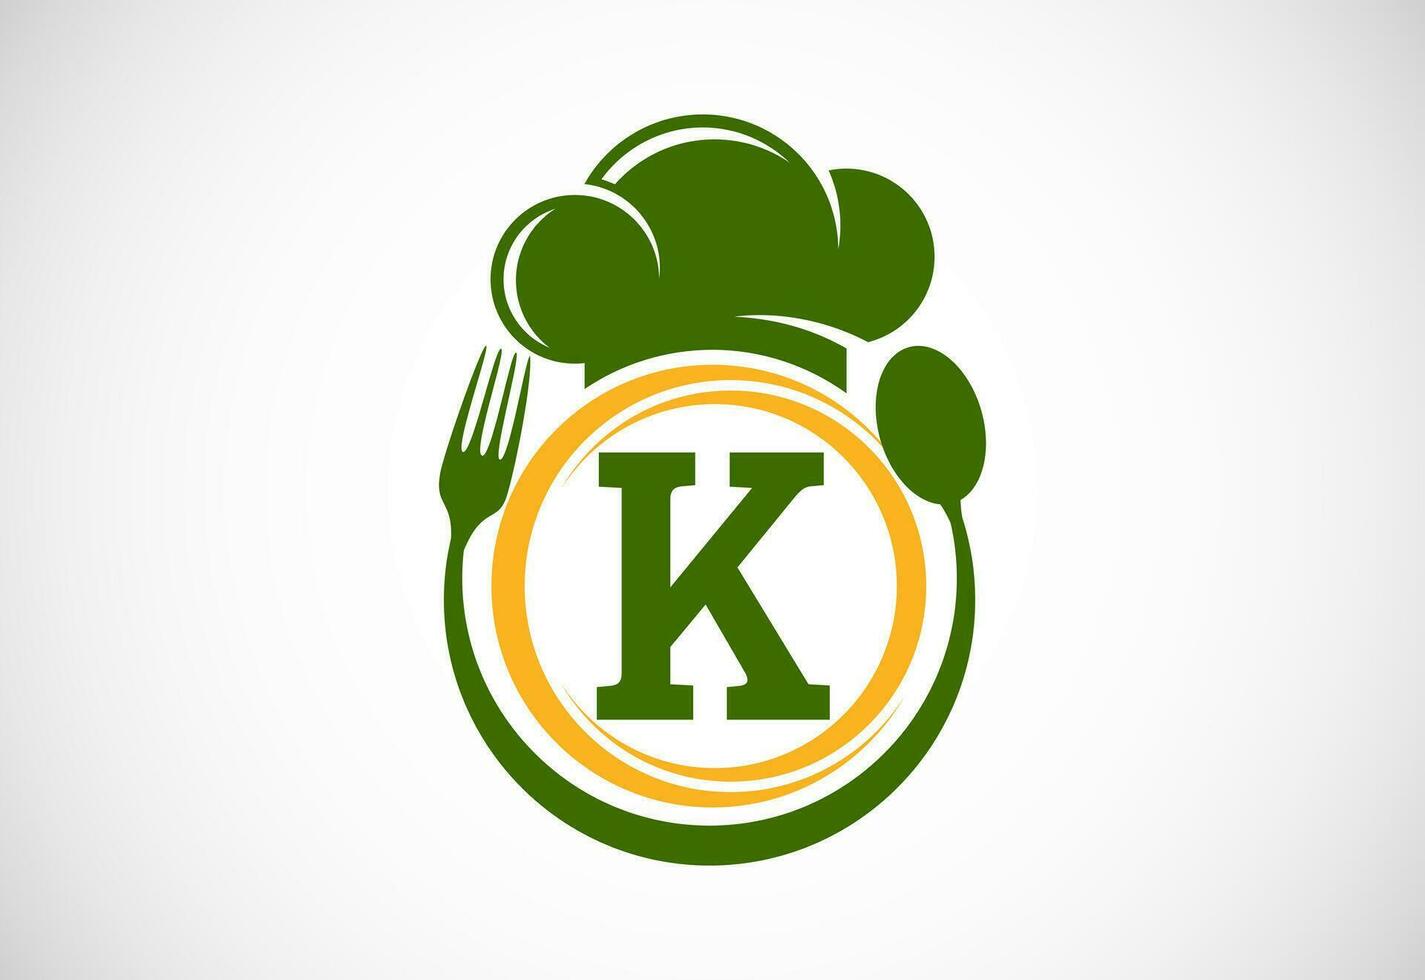 första alfabet k med kock hatt, sked och gaffel. modern vektor logotyp för Kafé, restaurang, matlagning företag, och företag identitet